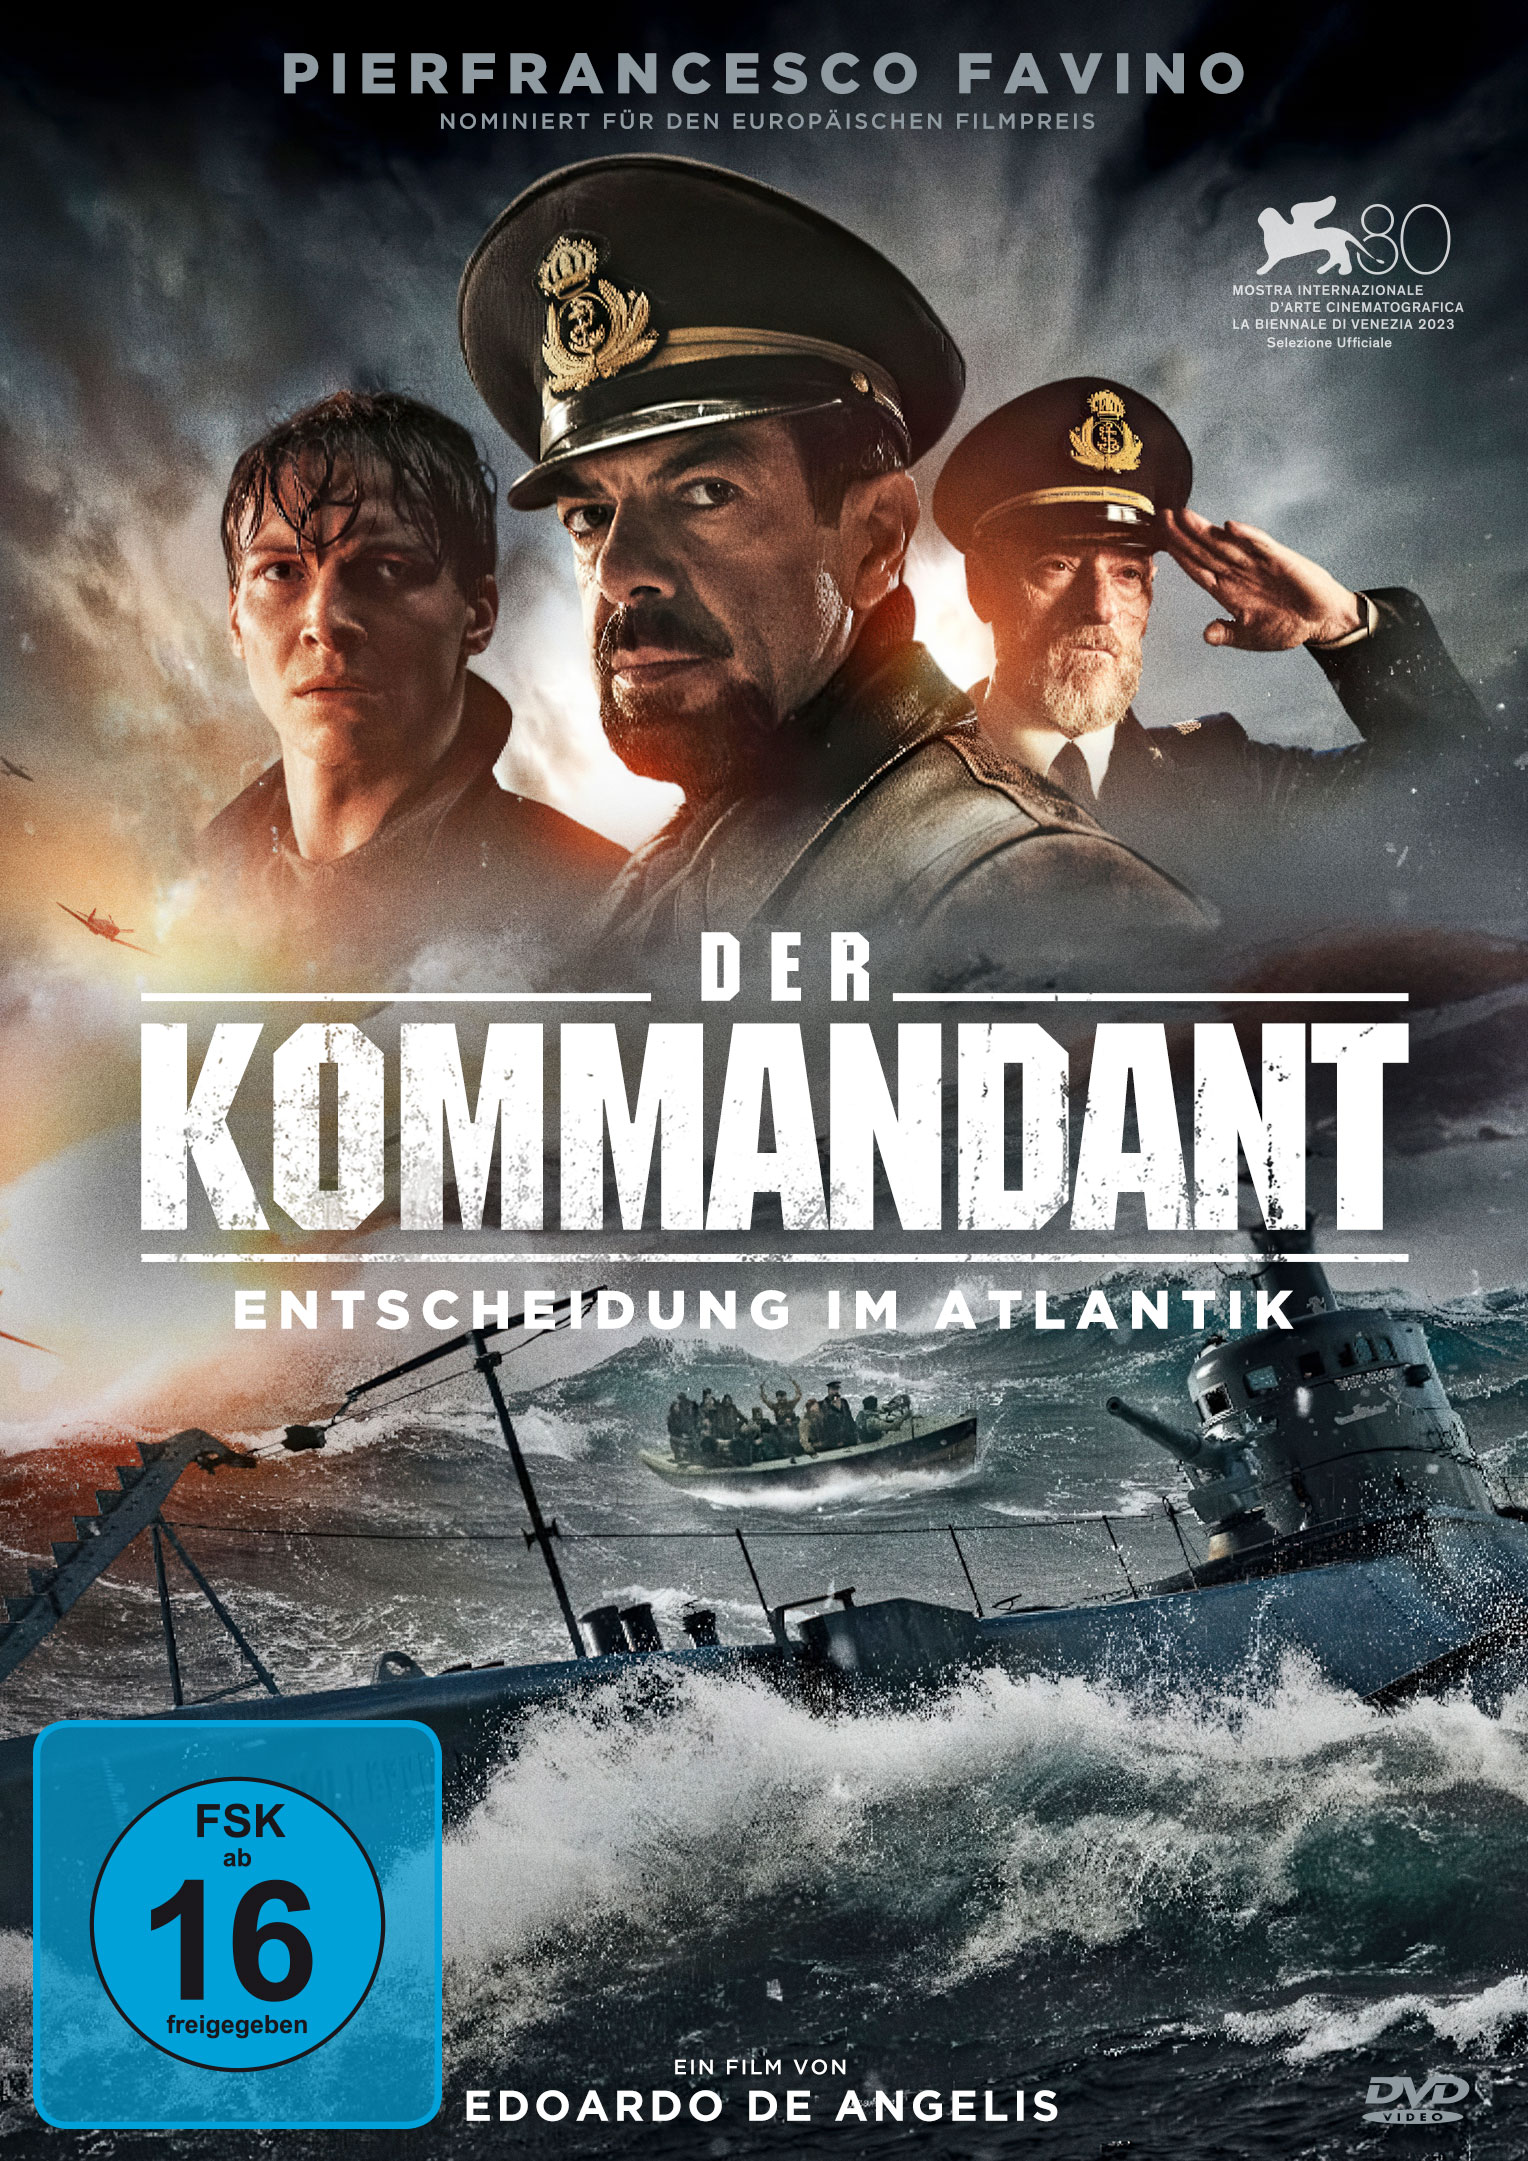 Der Kommandant - Entscheidung im Atlantik (DVD)